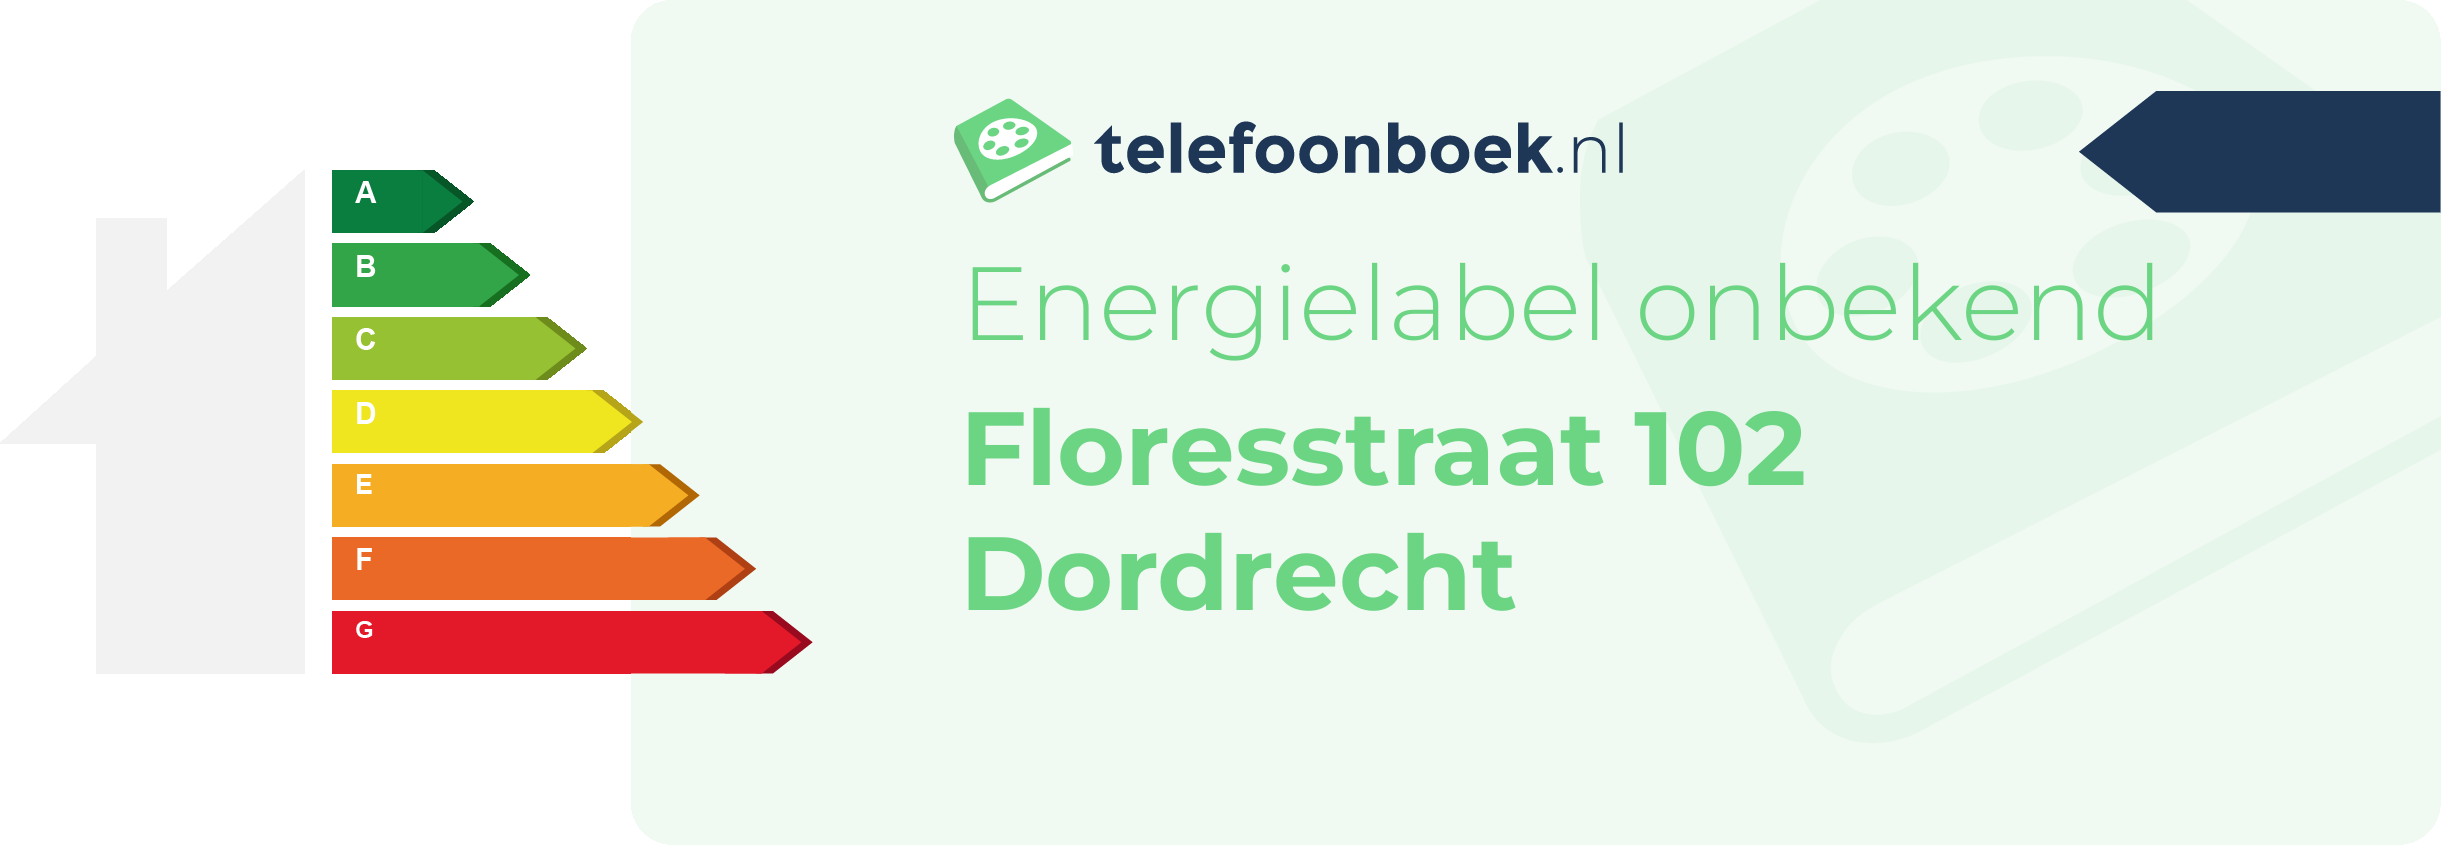 Energielabel Floresstraat 102 Dordrecht